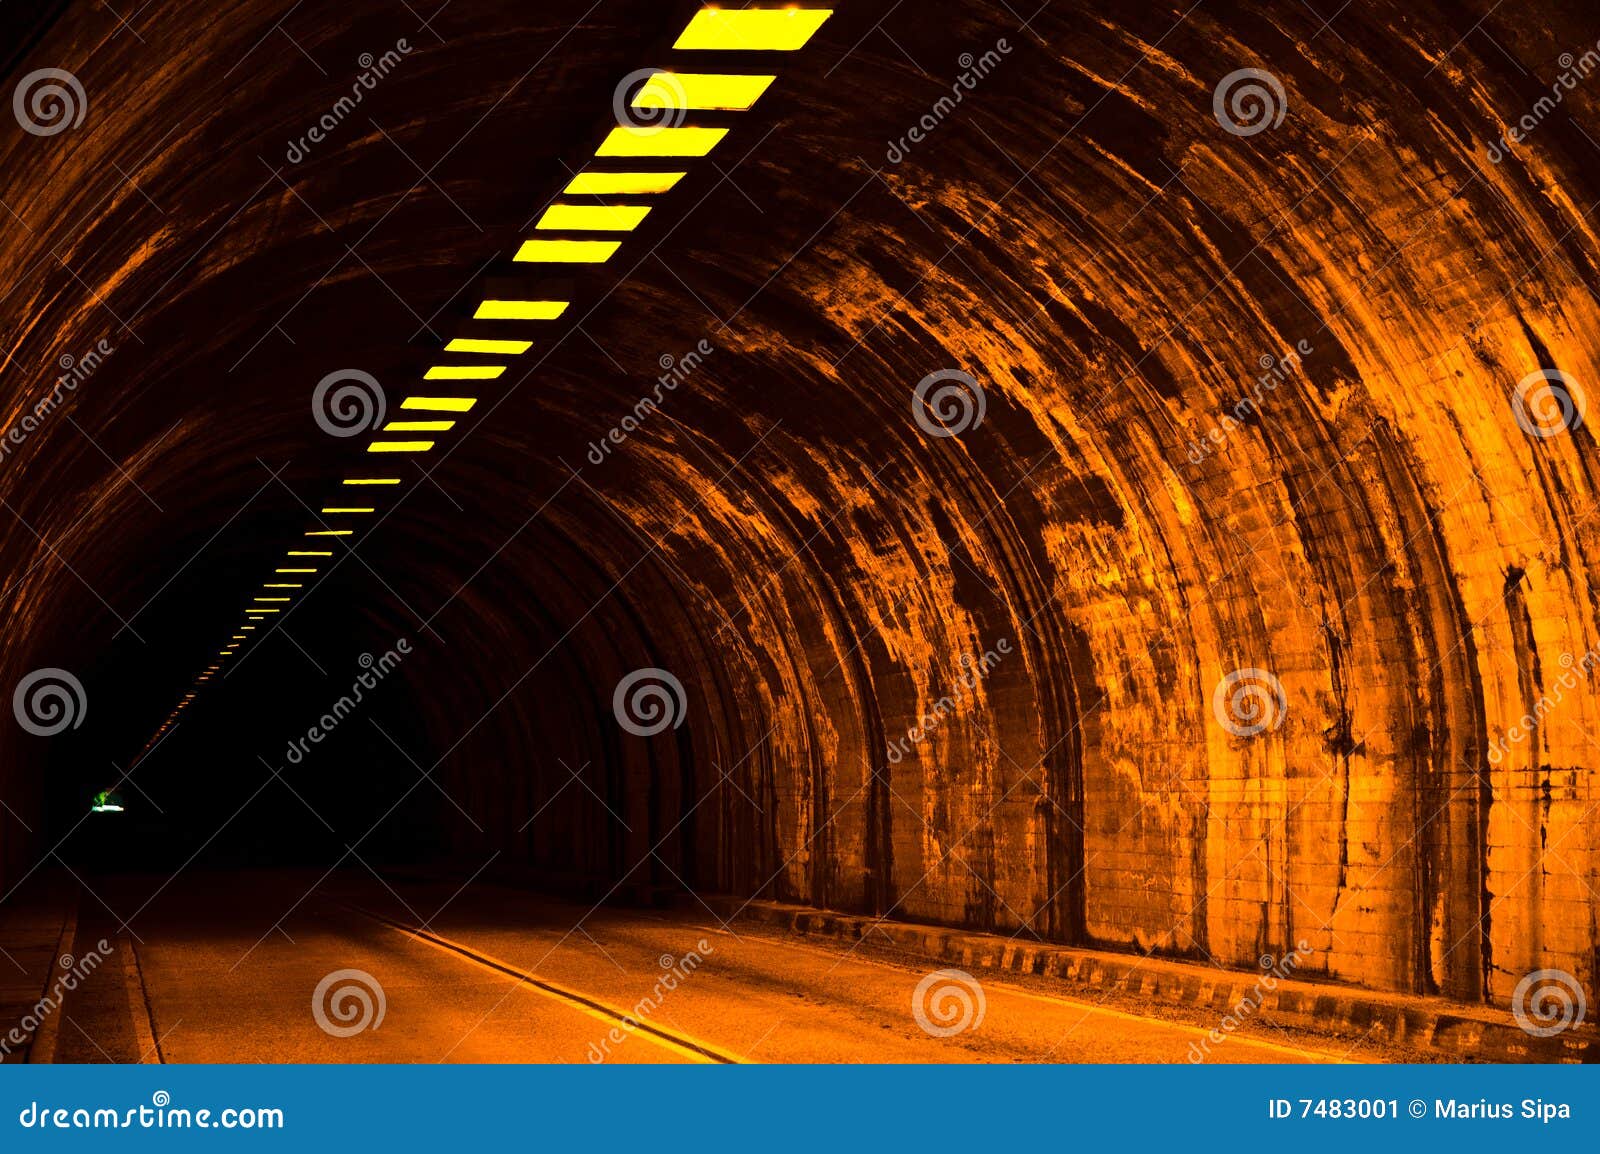 wawona tunnel, yosemite